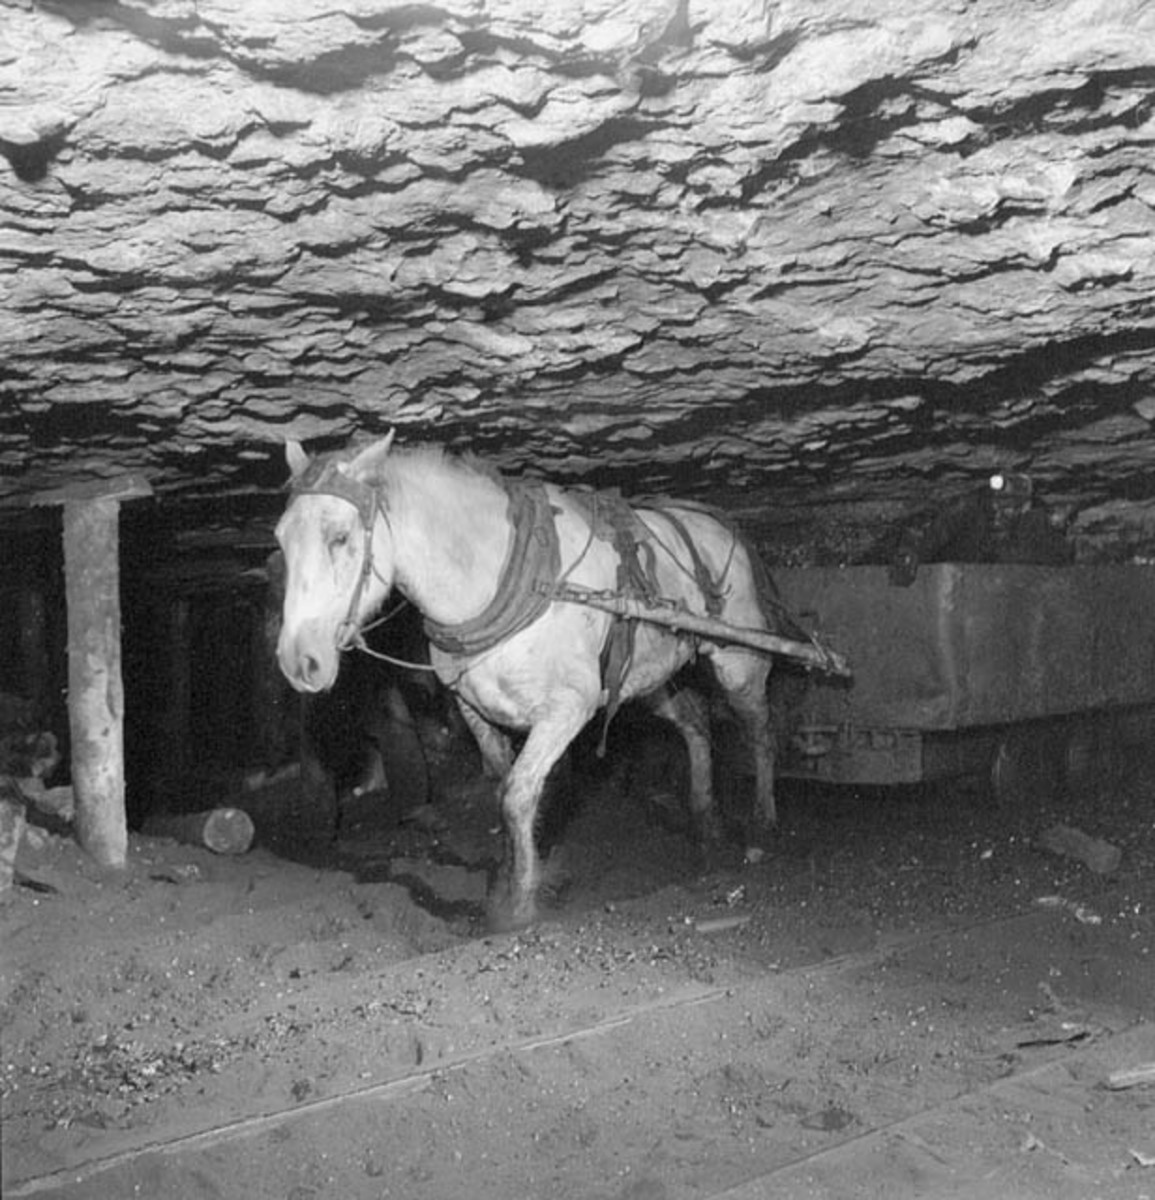 Pony at work in a mine in Nova Scotia, Canada.